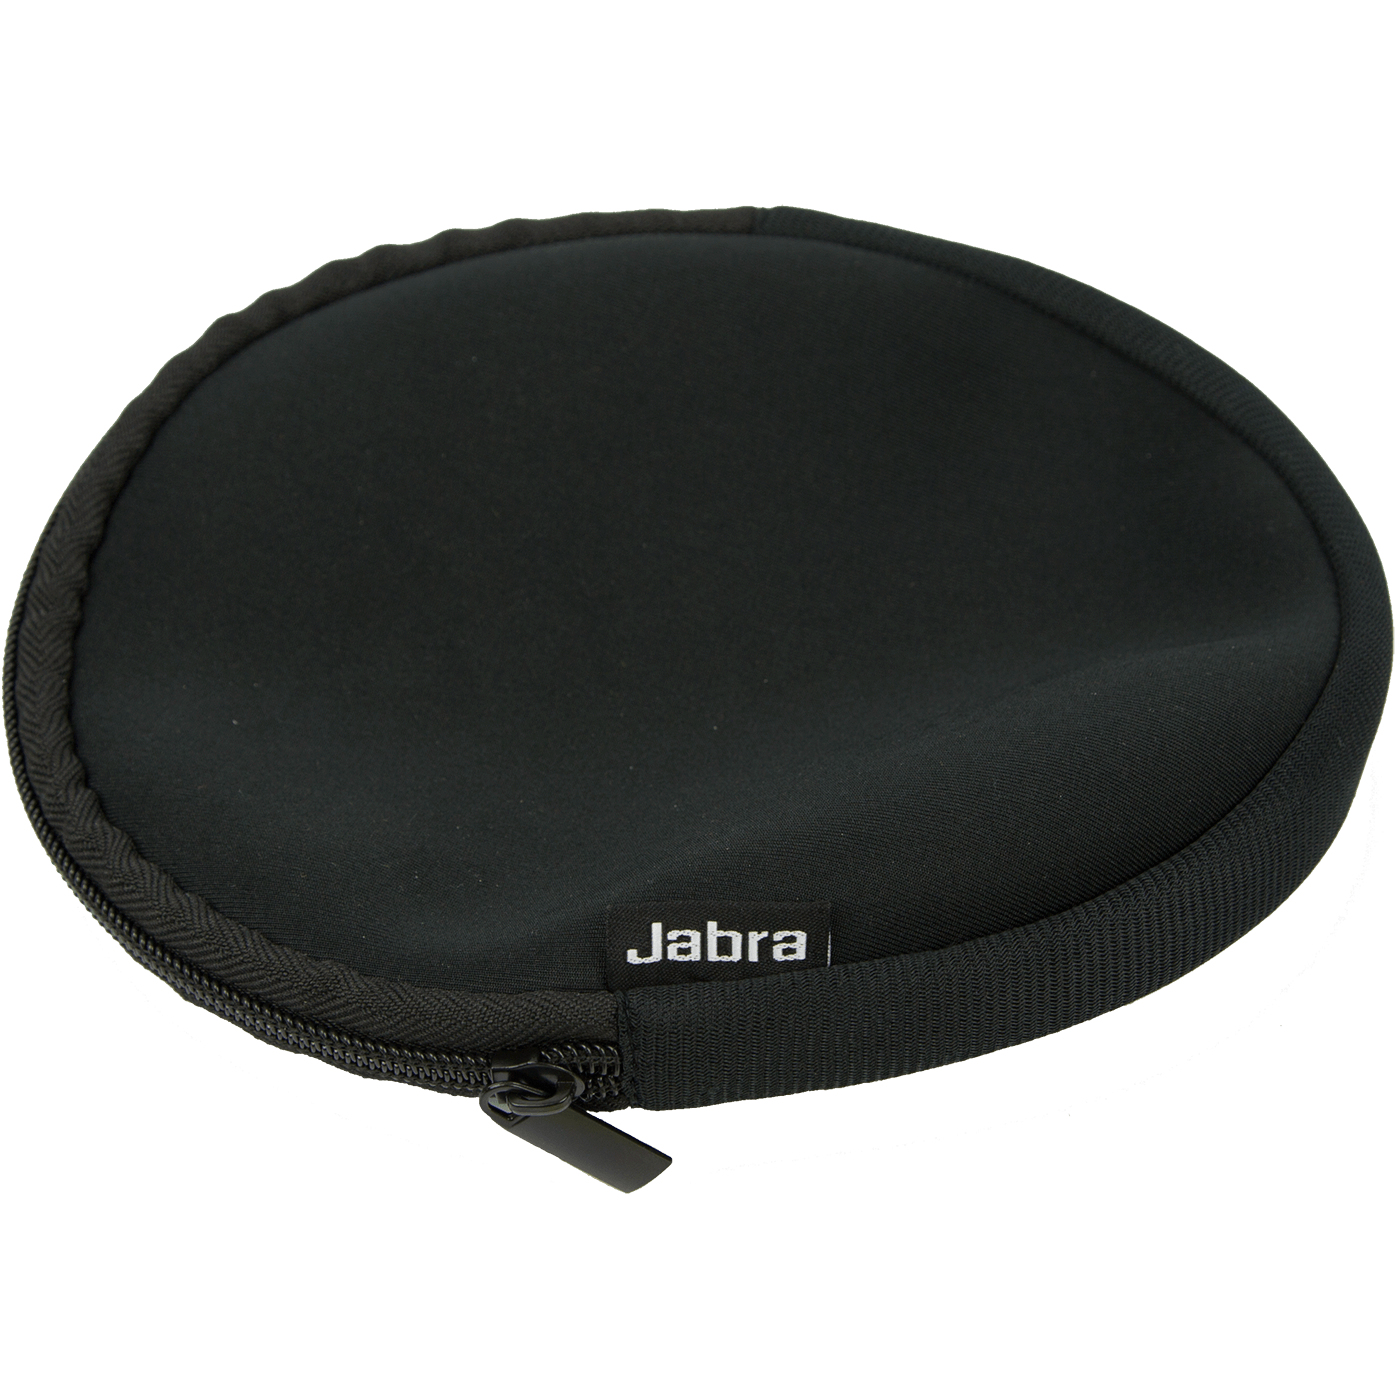 Jabra Tragetasche für Headset - Neopren (Packung mit 10)